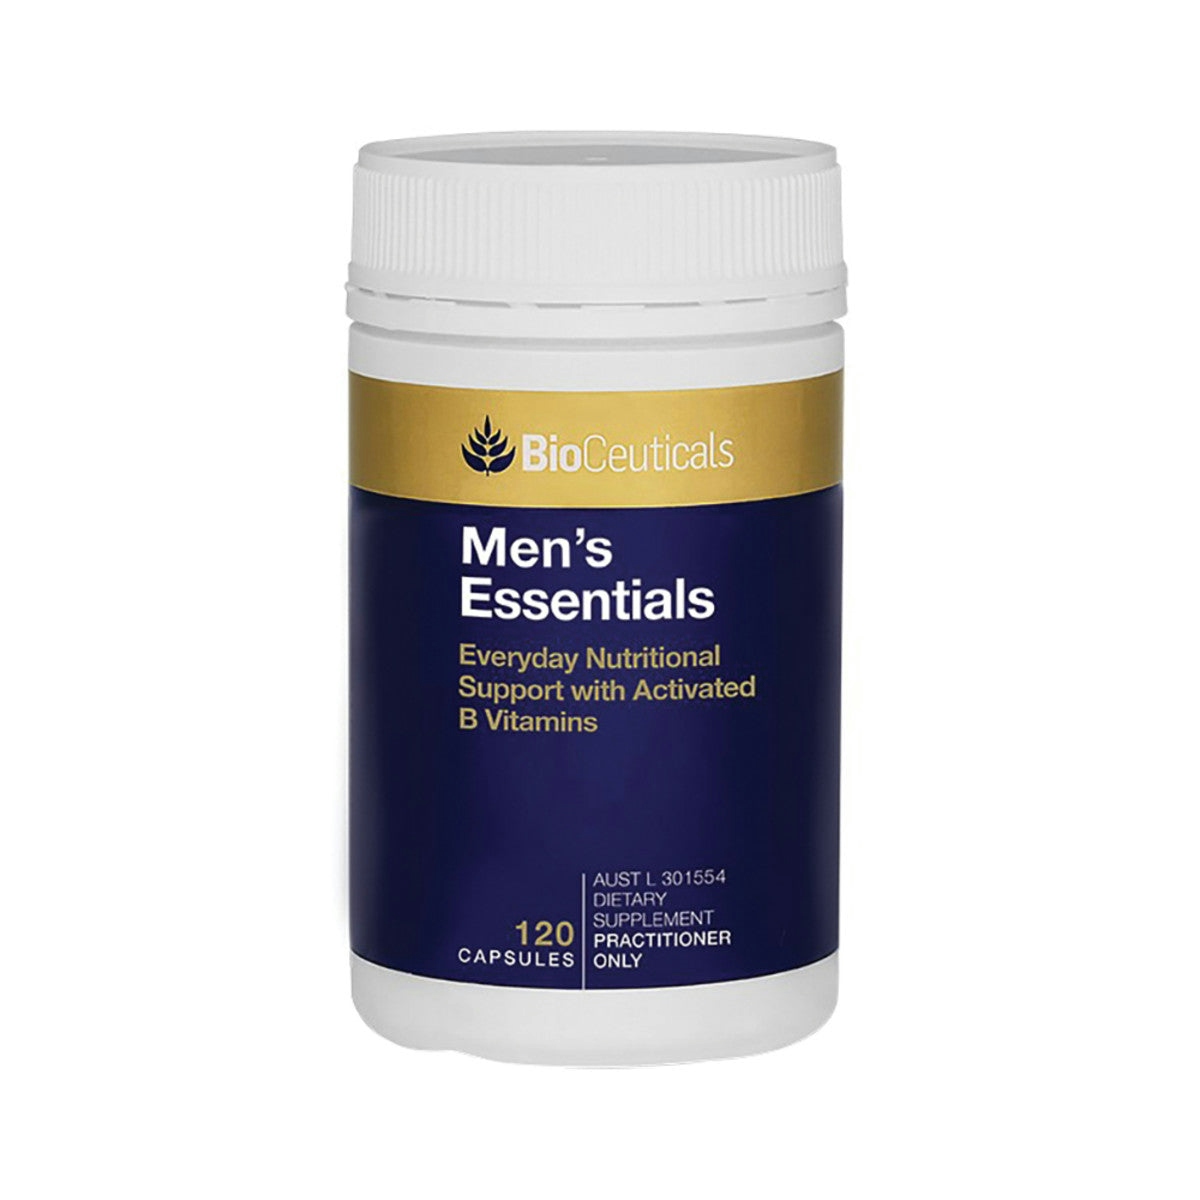 image of BioCeuticals Men's Essentials on white image